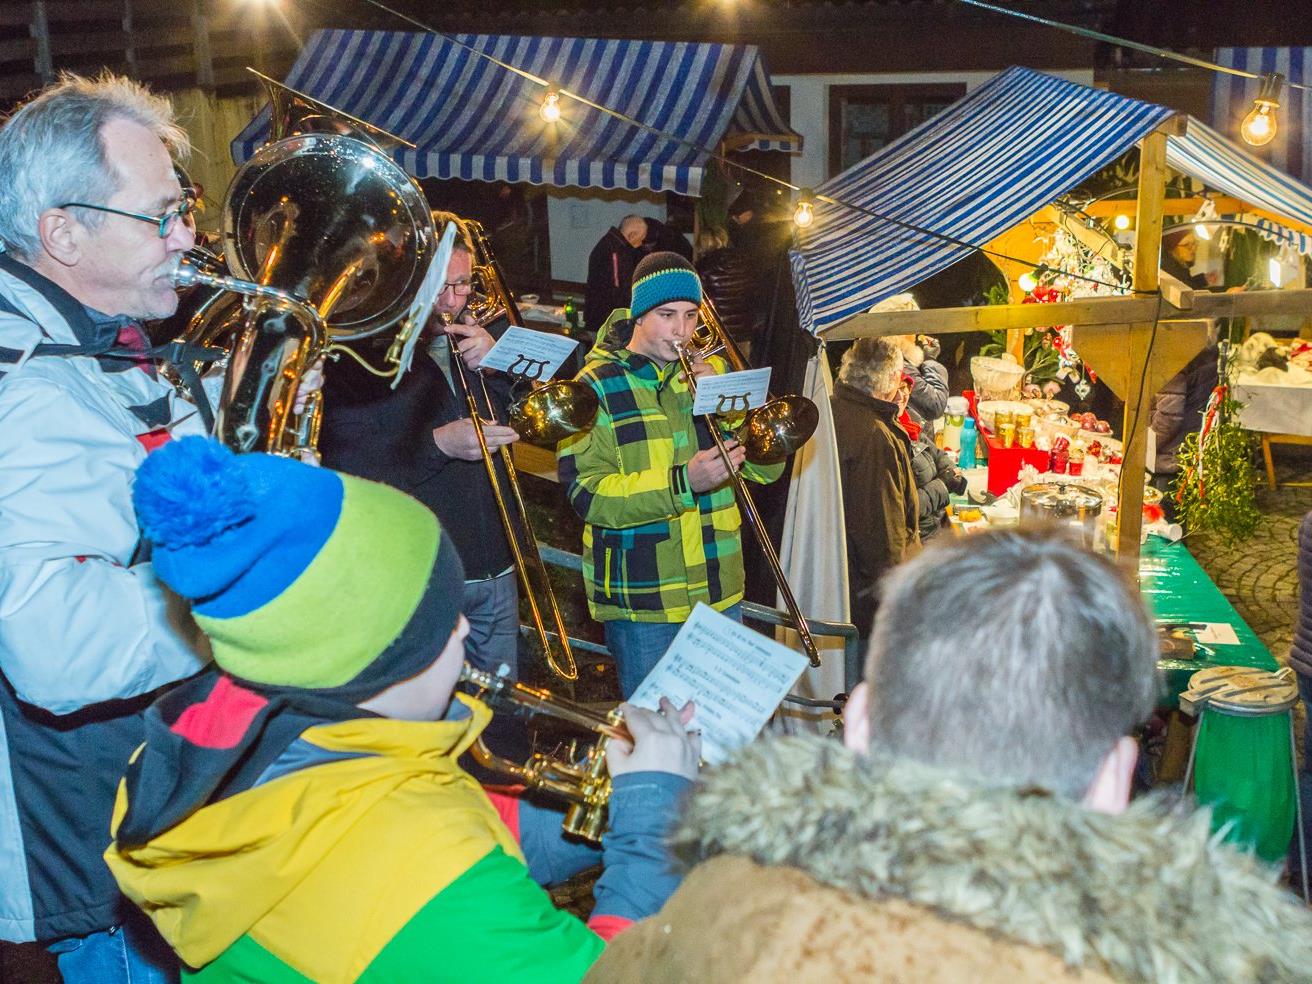 Ein Bläserensemble der Harmoniemusik erfreute die vielen Besucher des Santatöner Weihnachtsmarktes mit besinnlichen Weisen.